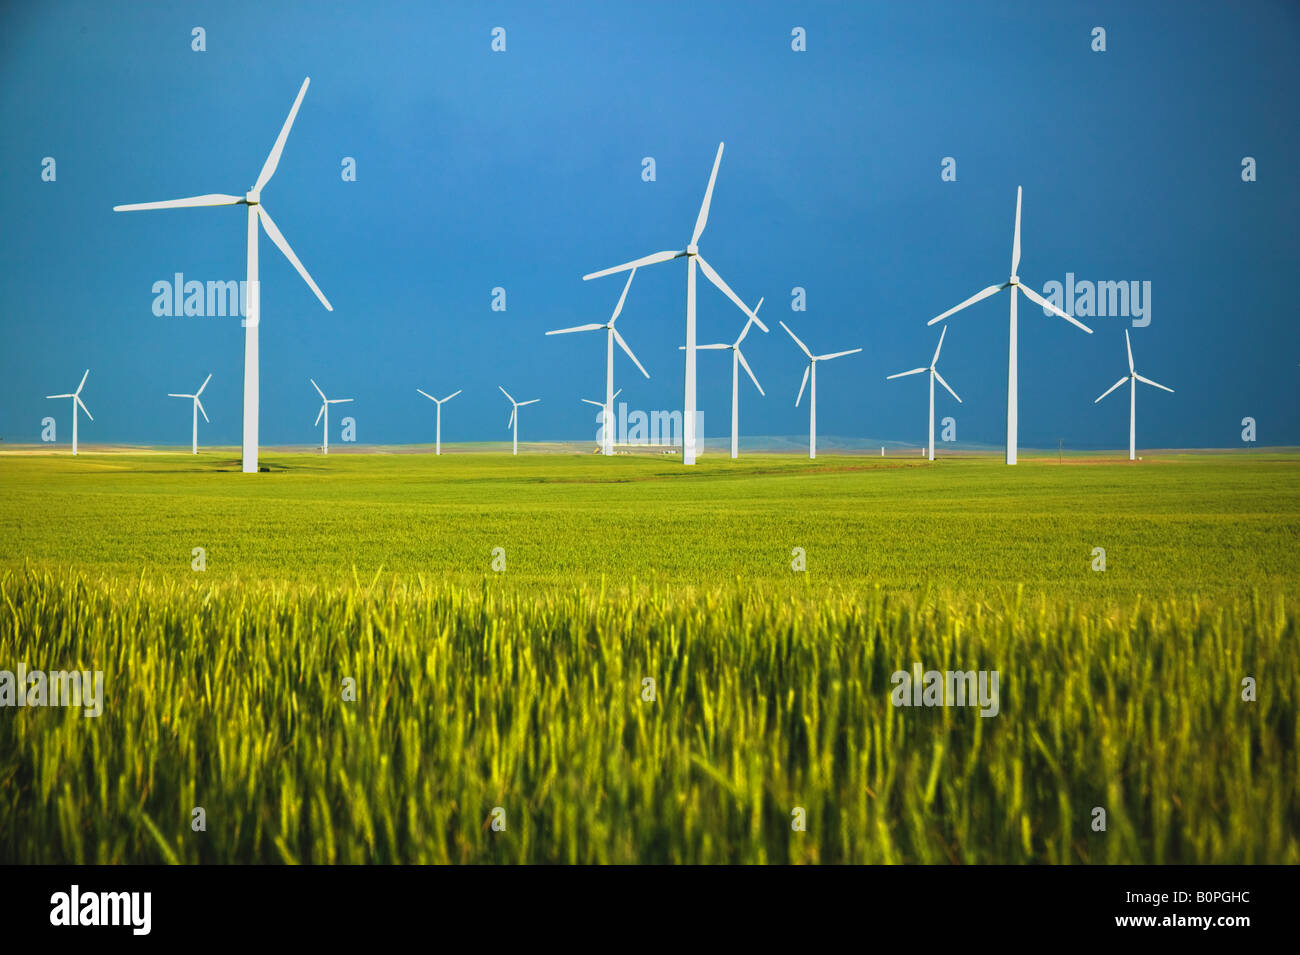 Wind farm, turbines  in immature wheat field. Stock Photo